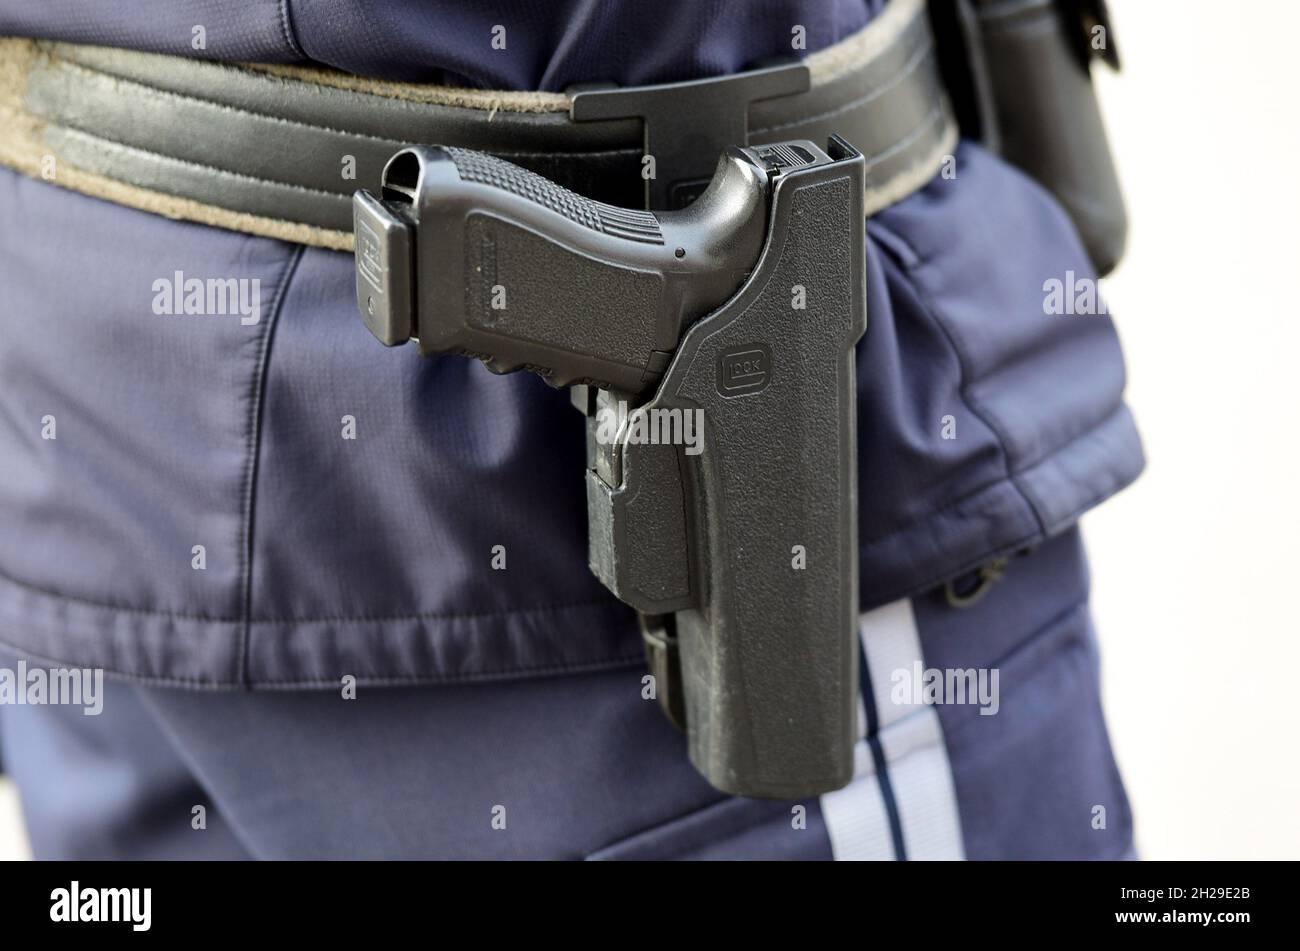 Detailaufnahme einer österreichischen Polizei-Pistole 'Glock', Österreich, Europa - Detail of an Austrian police pistol 'Glock', Austria, Europe Stock Photo